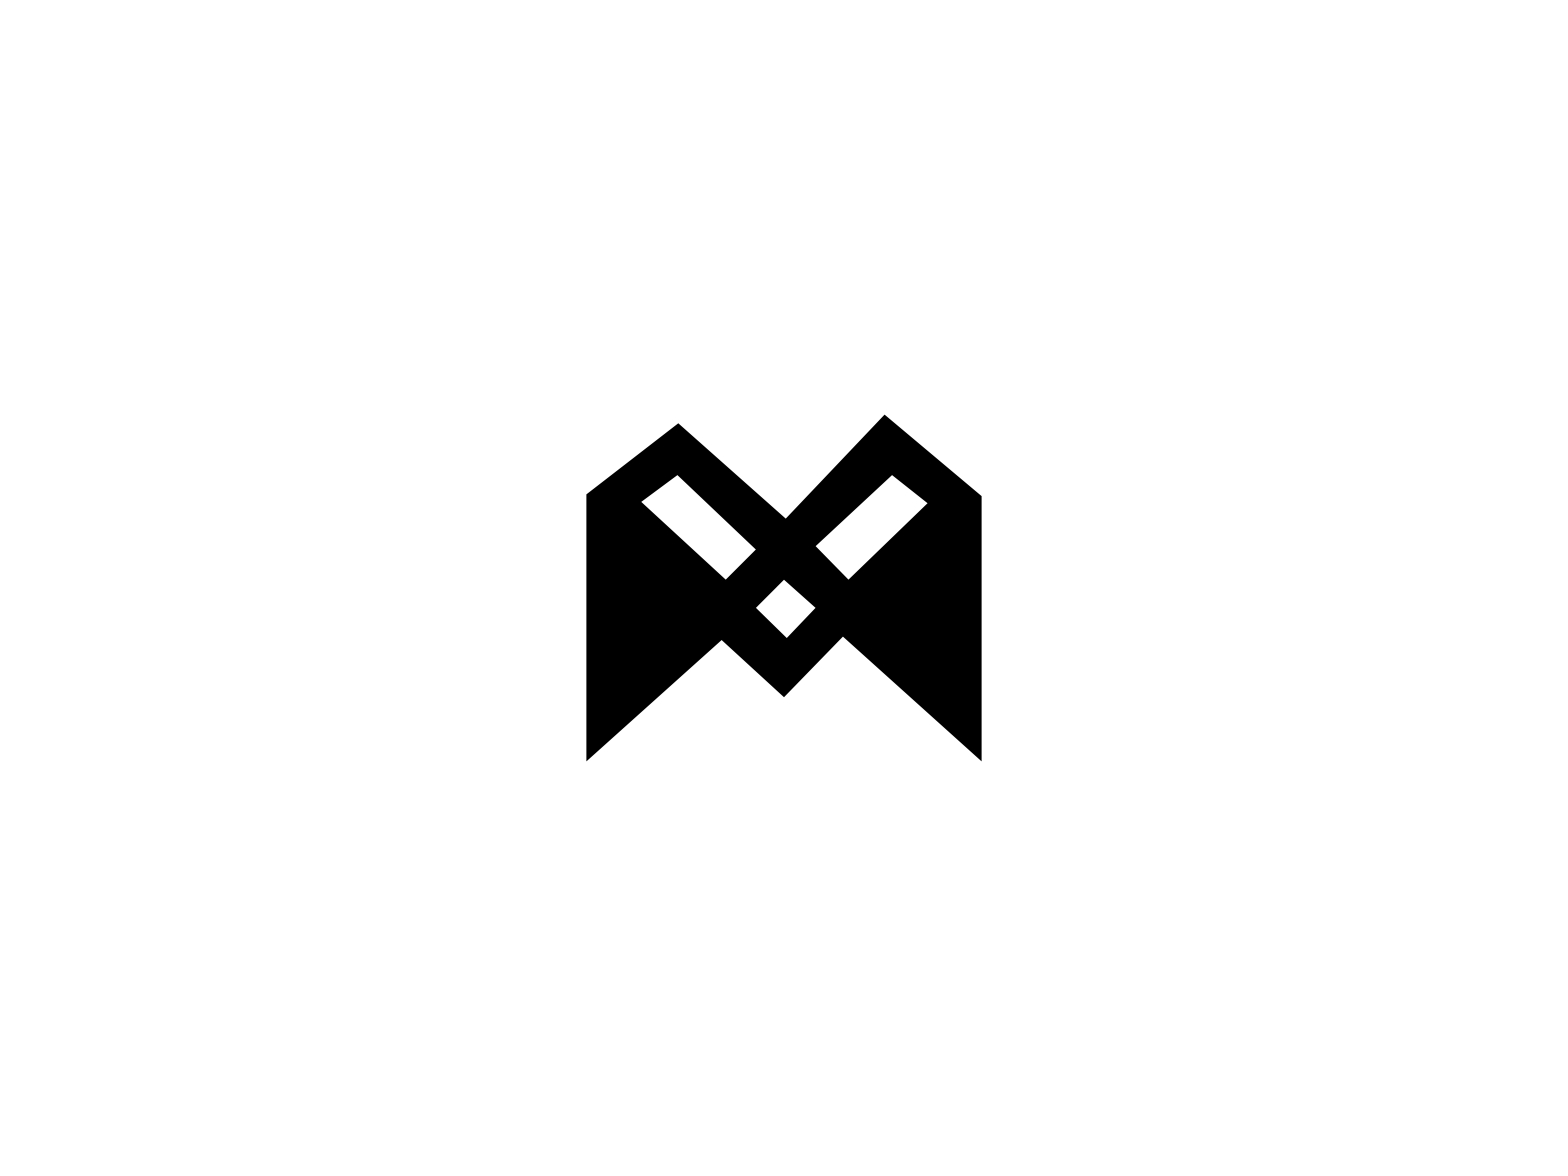 M Monogram by Hmza - UI/UX Designer on Dribbble